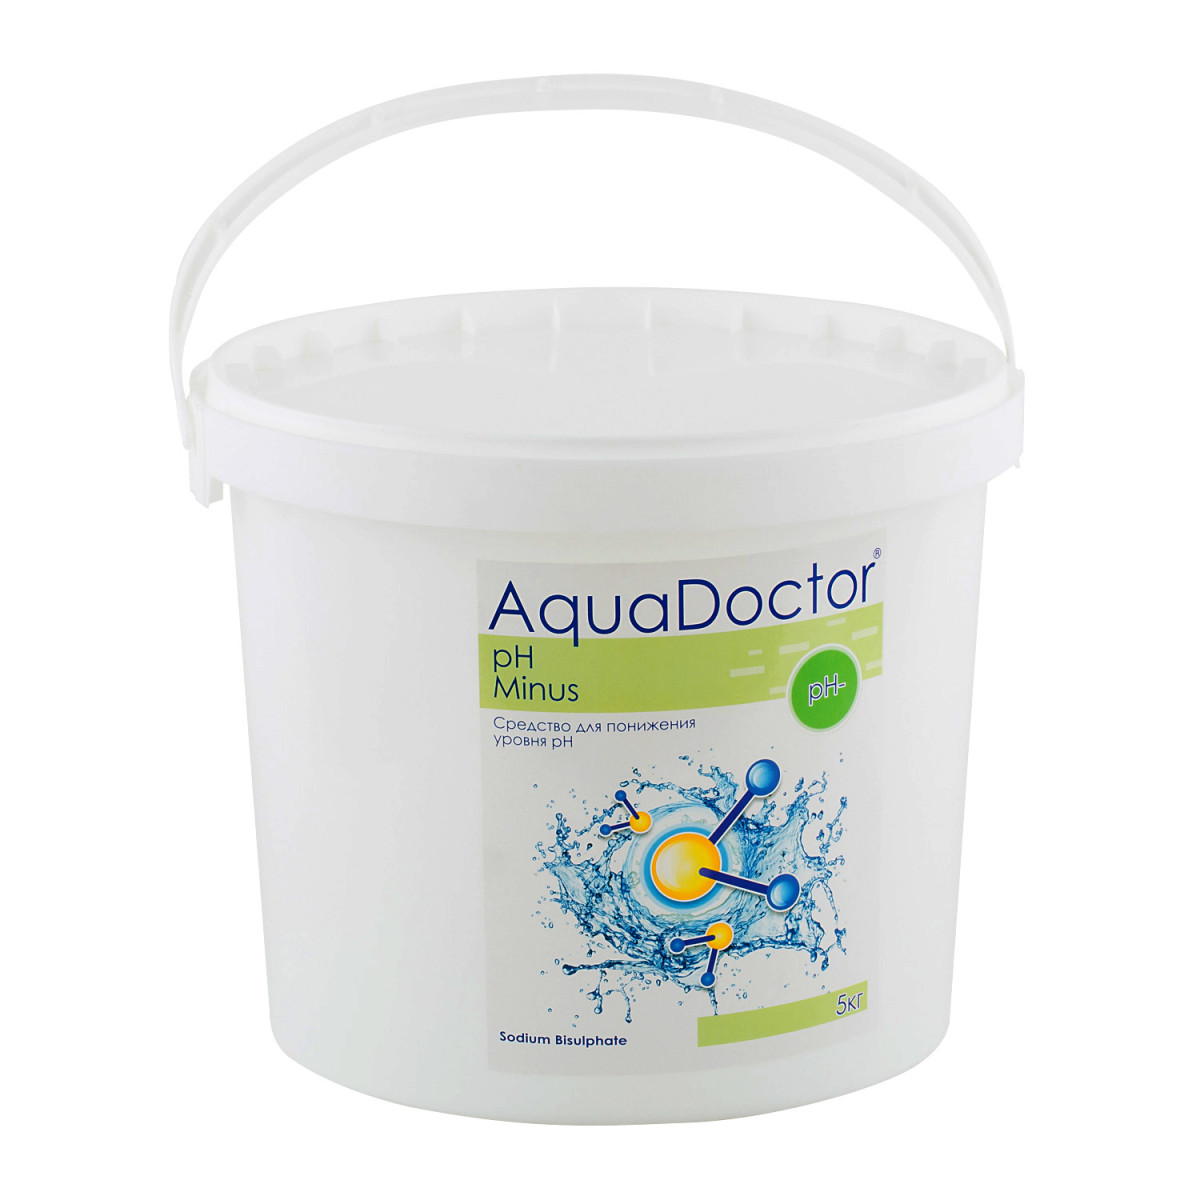 Средство для понижения уровня РН воды бассейна - РН минус гранулированный AquaDOCTOR, 5 кг.